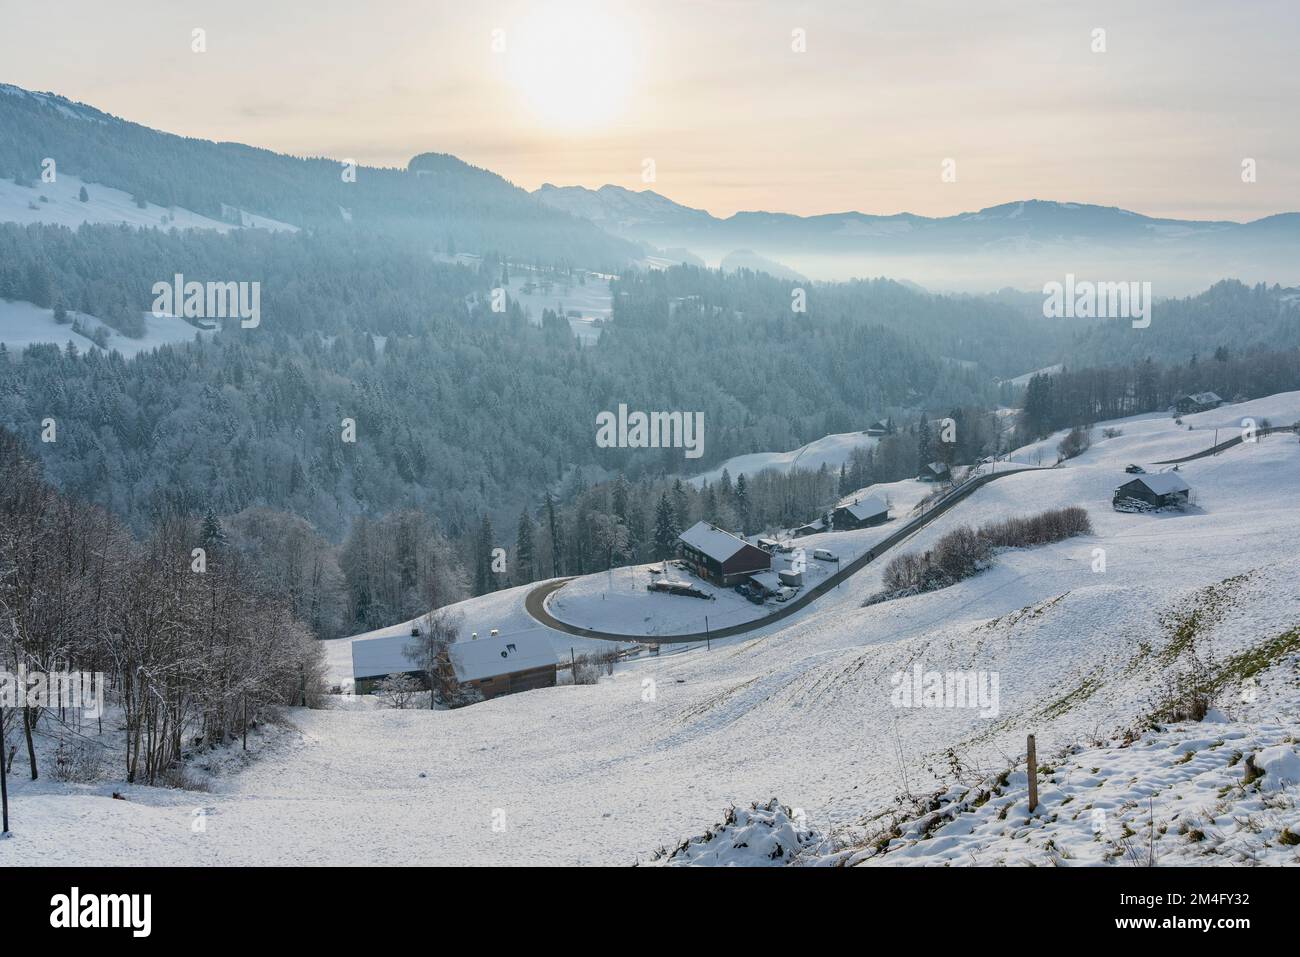 Frisch verschneite Bergstraße, die sich ins Tal schlängelt, Bauernhaus am Straßenrand, Berge und Täler mit Wäldern und Wiesen im Hintergrund, Abend Stock Photo